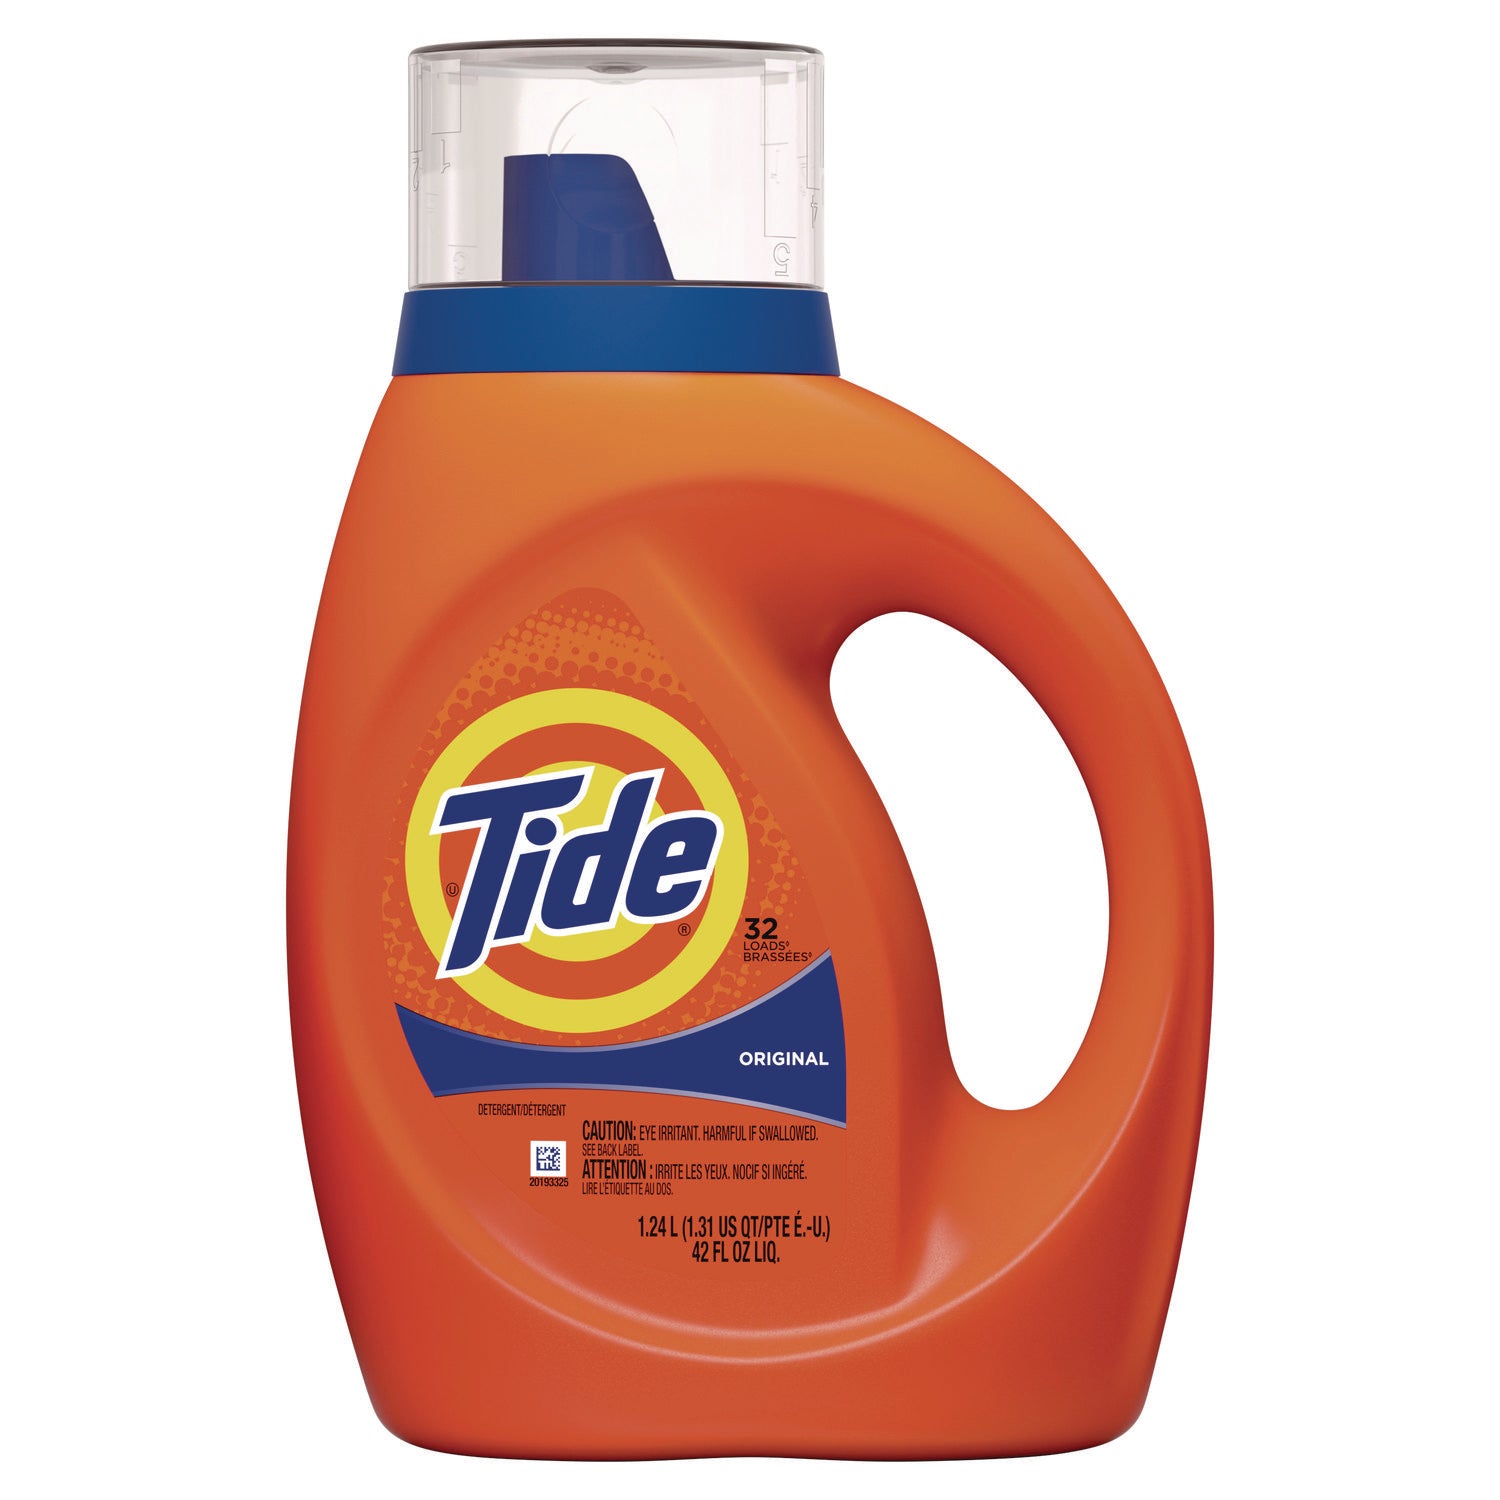 liquid-tide-laundry-detergent-32-loads-42-oz-bottle-6-carton_pgc12117ct - 1